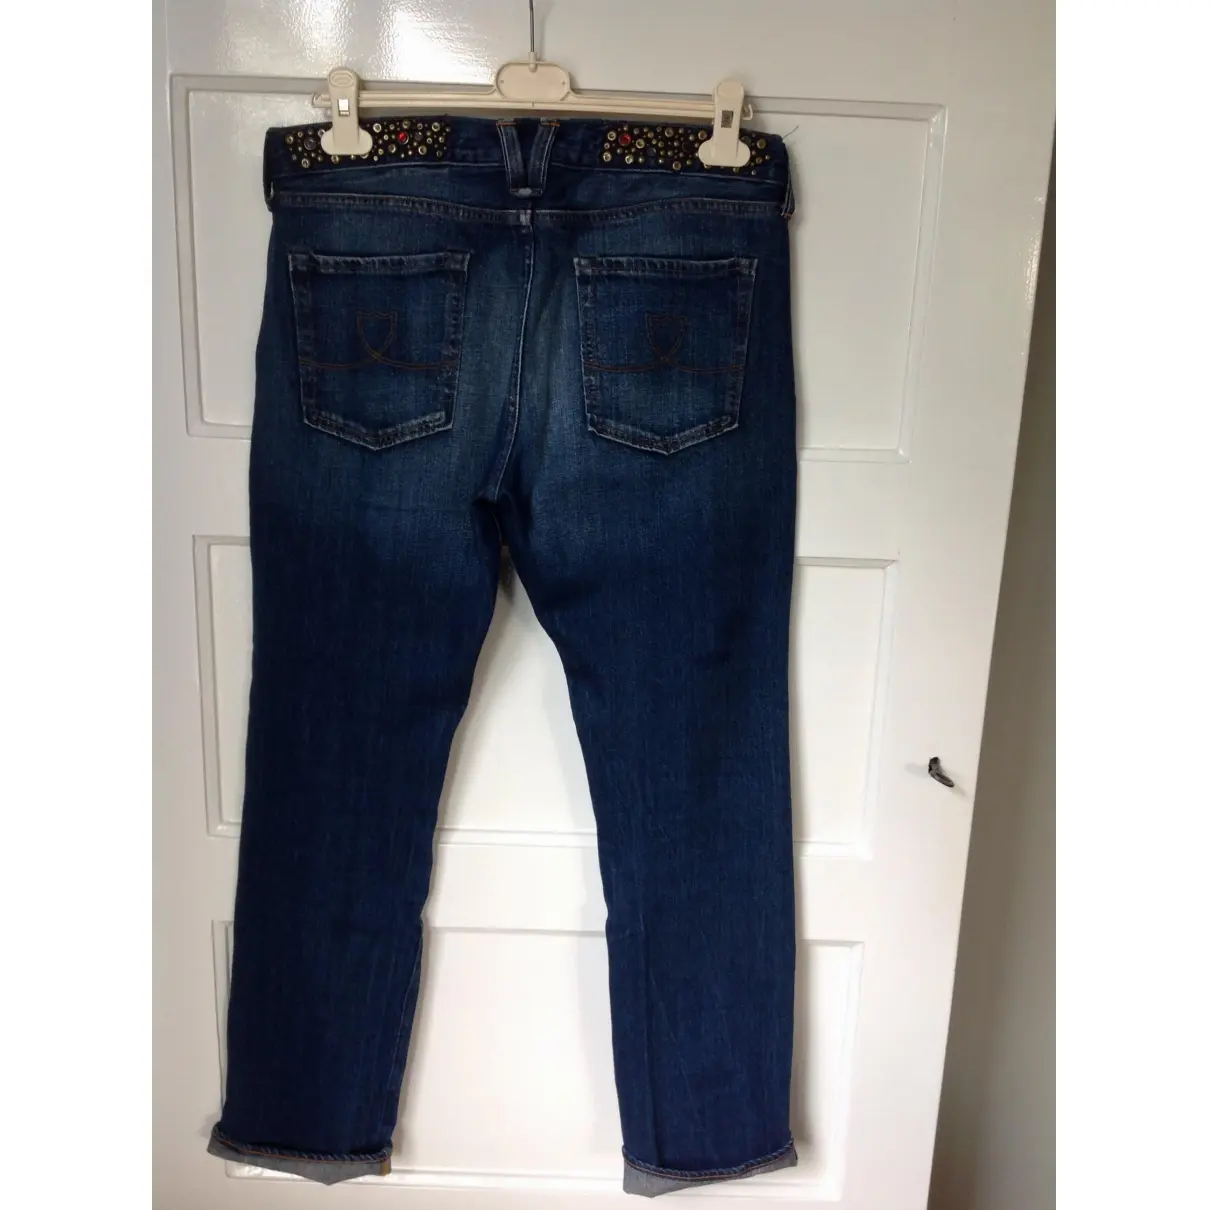 Htc Boyfriend jeans for sale